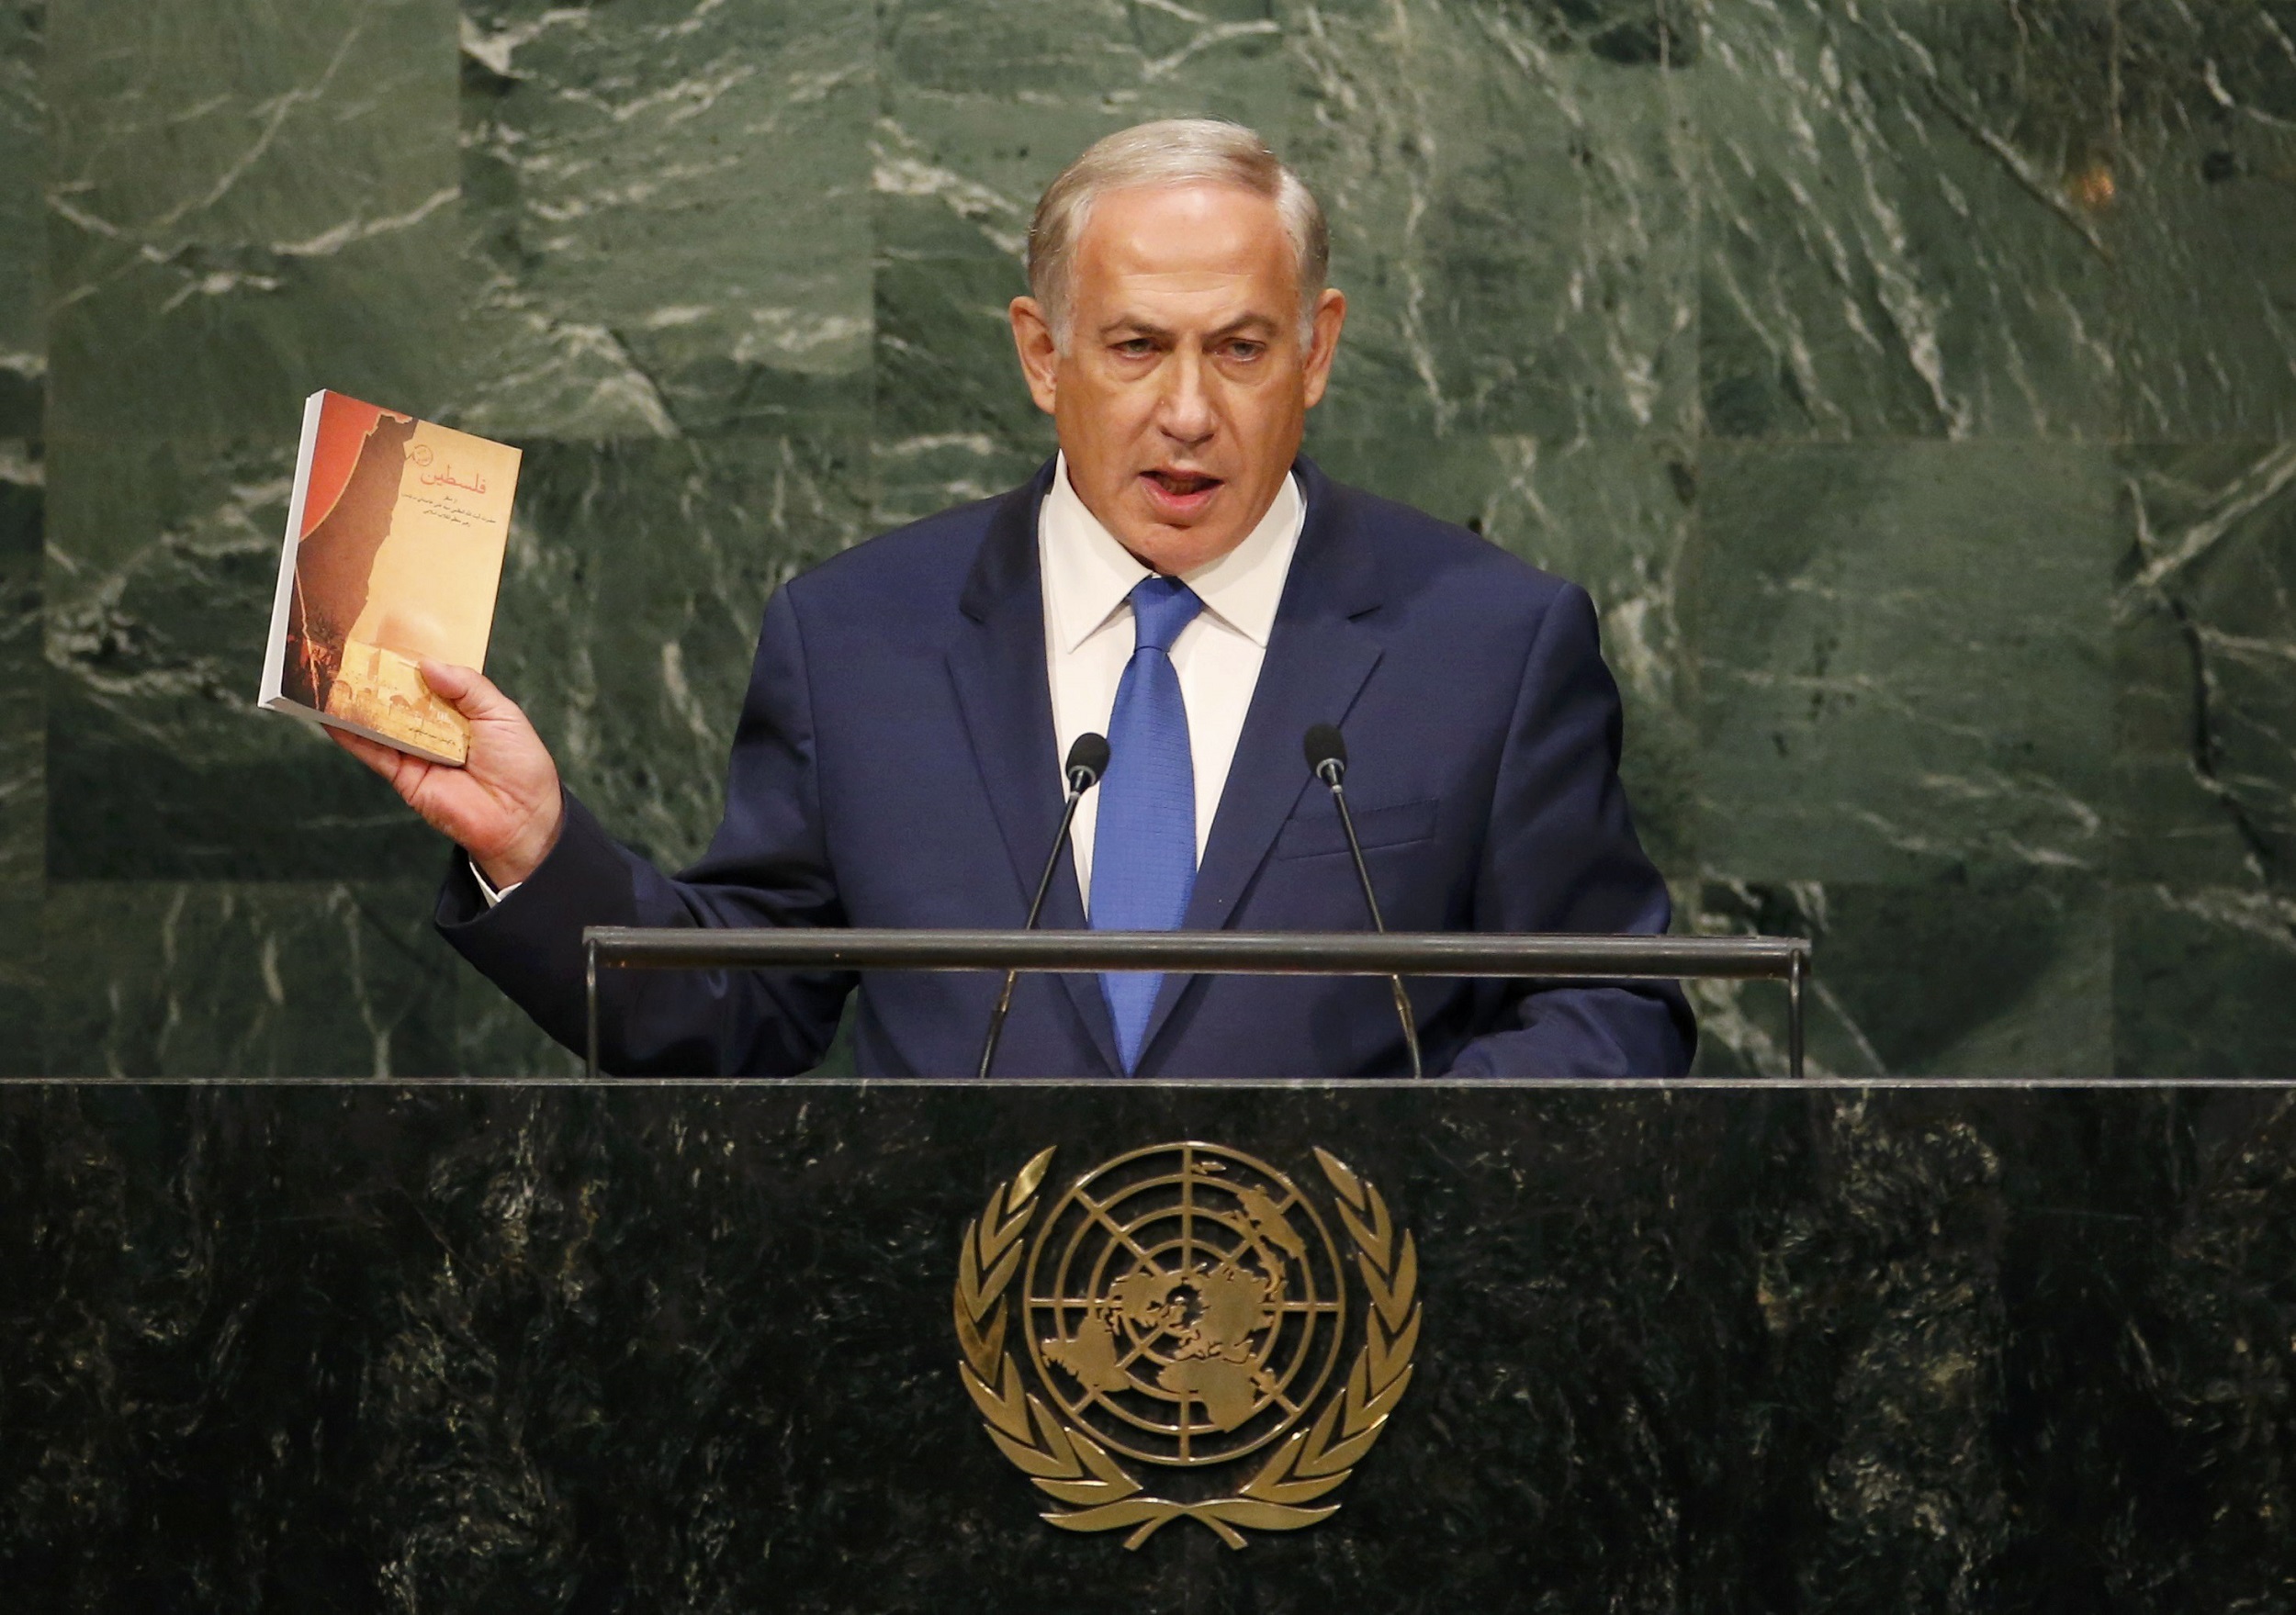 Perdana Menteri Israel Benjamin Netanyahu membawa sebuah buku saat memberikan pidato di rapat ke-70 Sidang Umum PBB di New York, Kamis (1/10). ANTARA FOTO/REUTERS/Mike Segar.